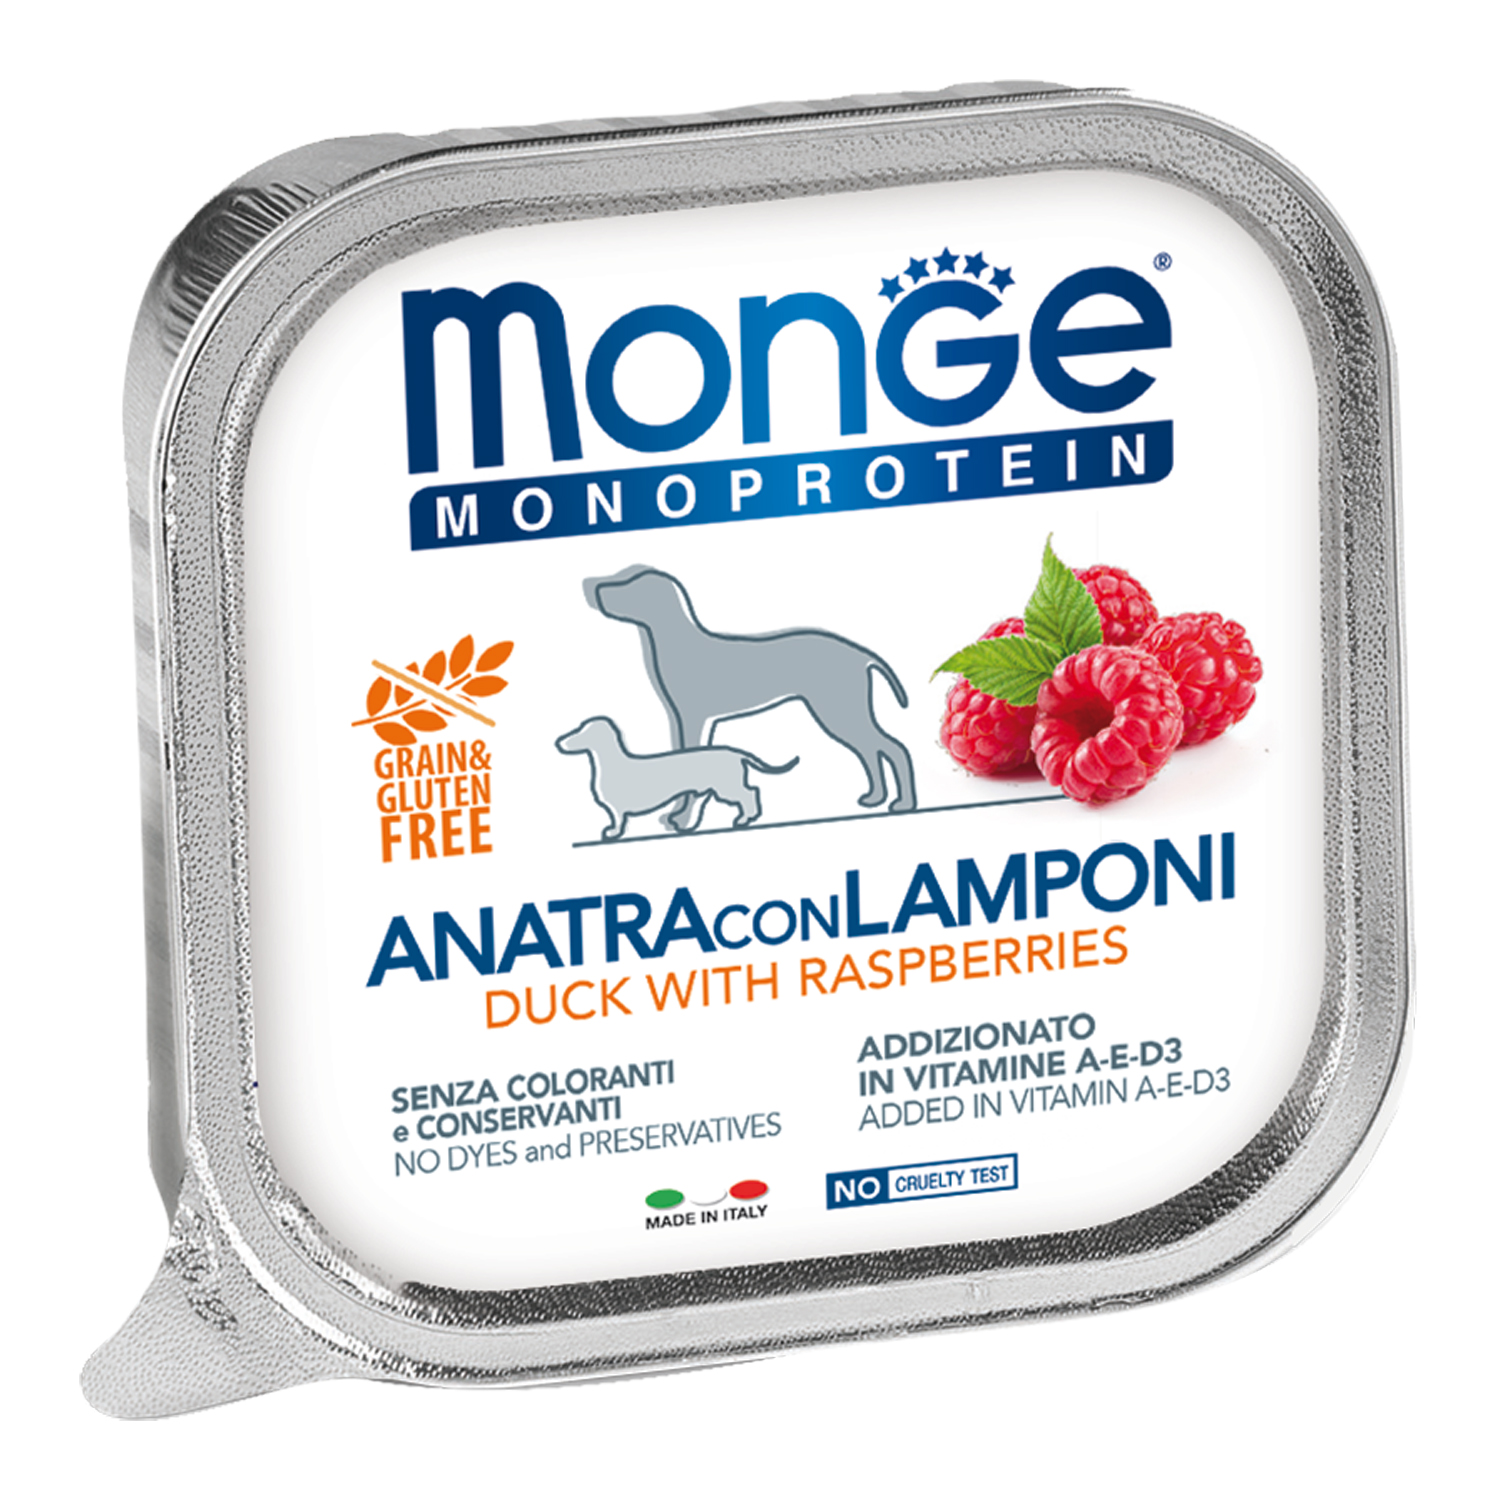 Влажный корм Monge Dog Natural Monoprotein Fruits для собак, паштет из утки с малиной, консервы 150 г